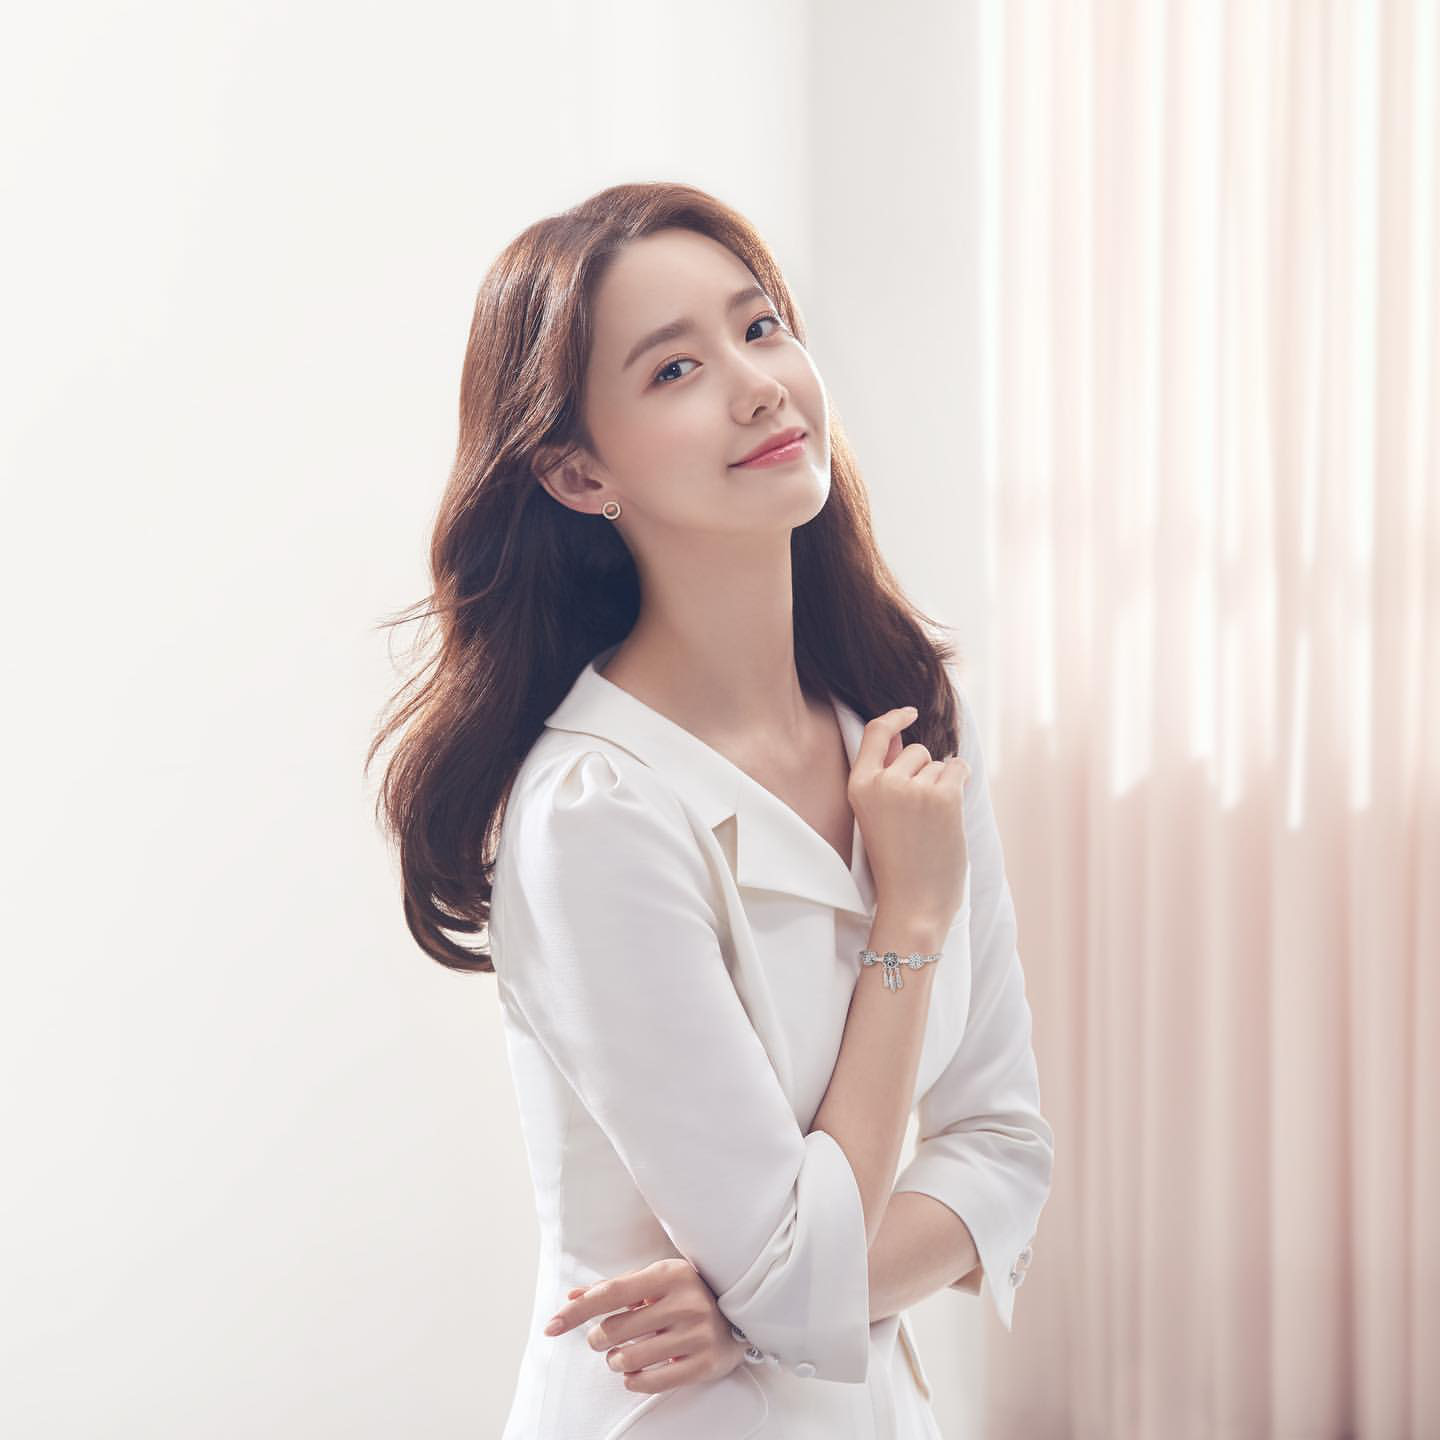 Ba tình đầu quốc dân Kbiz đọ sắc: Son Ye Jin – Yoona – Suzy đều xinh đẹp tuyệt trần trong cùng 1 mẫu váy - Ảnh 5.